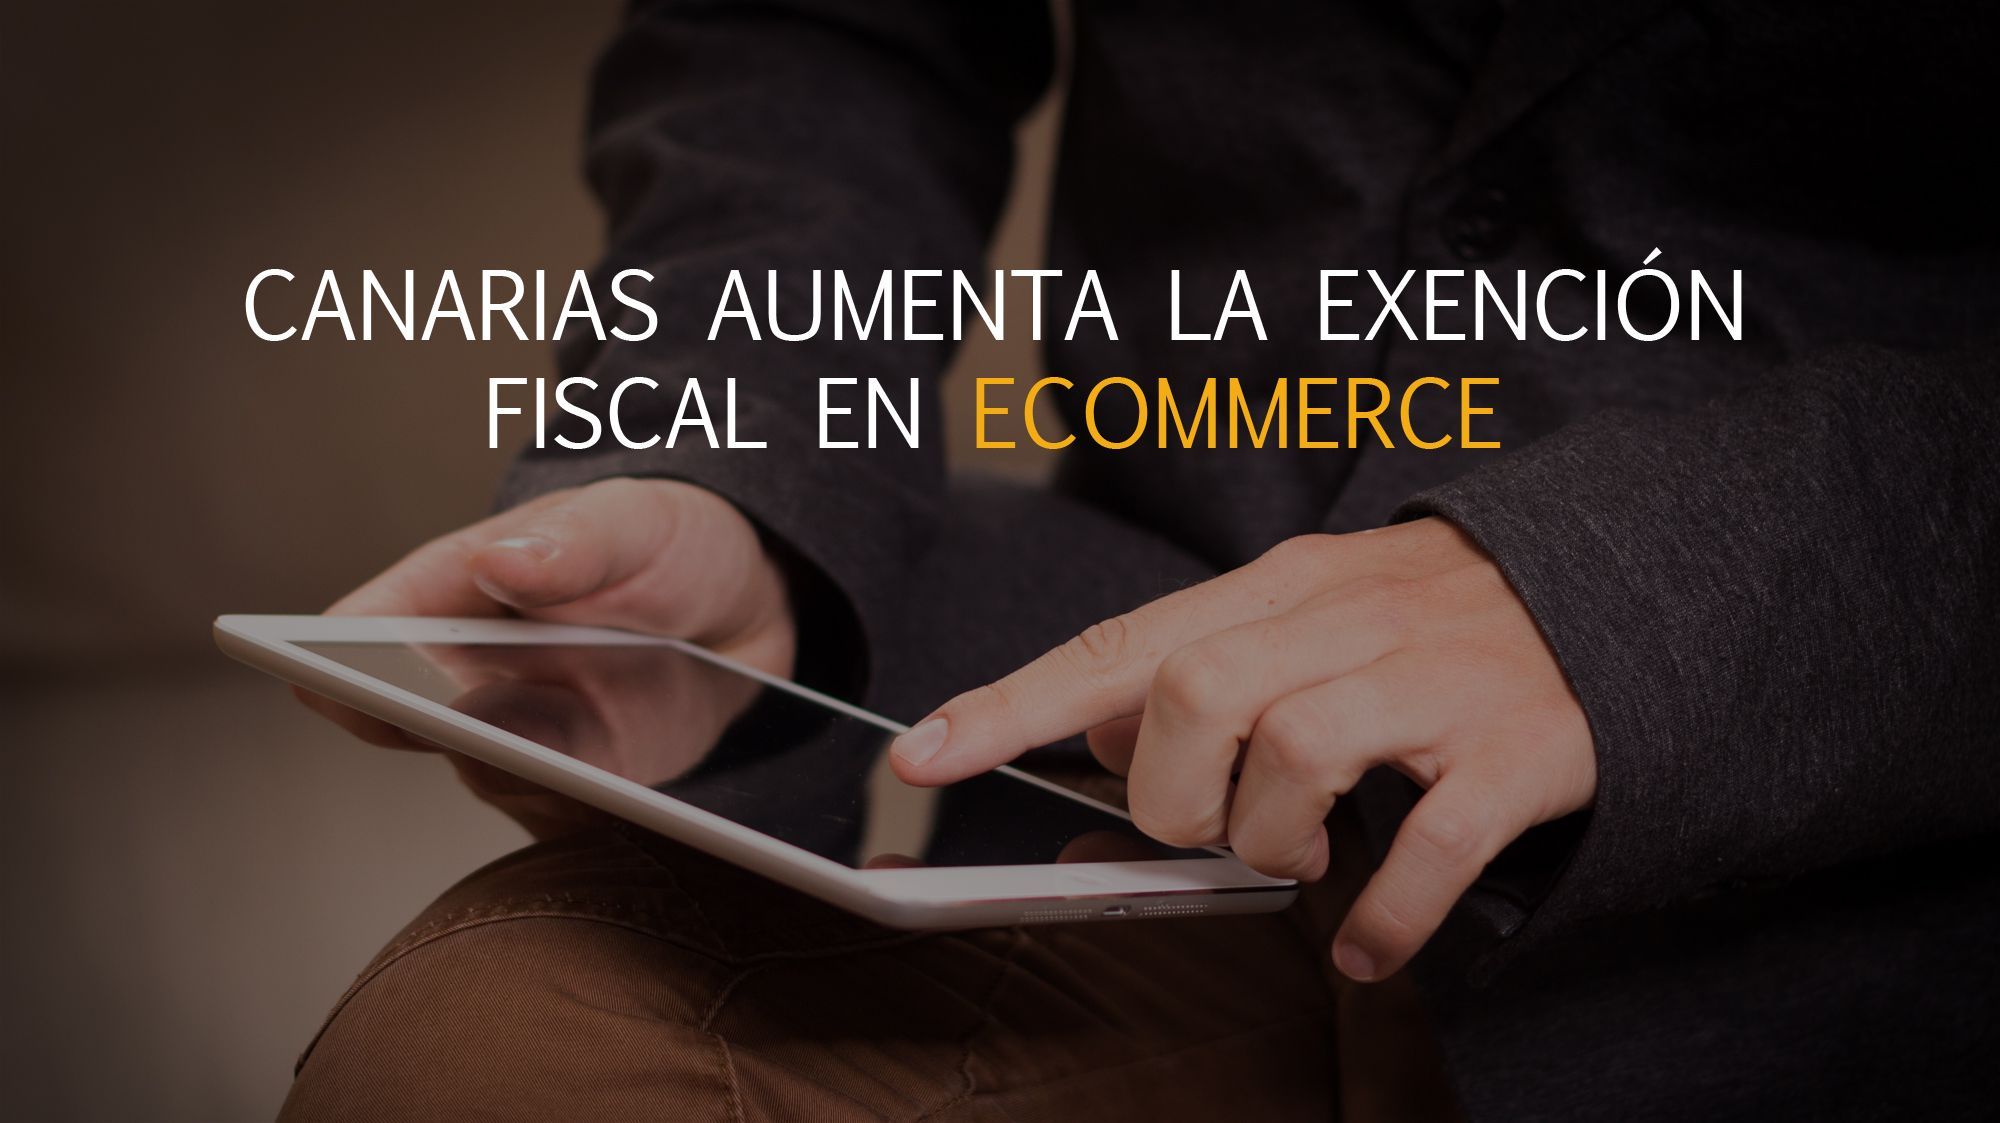 La exención fiscal en eCommerce aumenta en Canarias